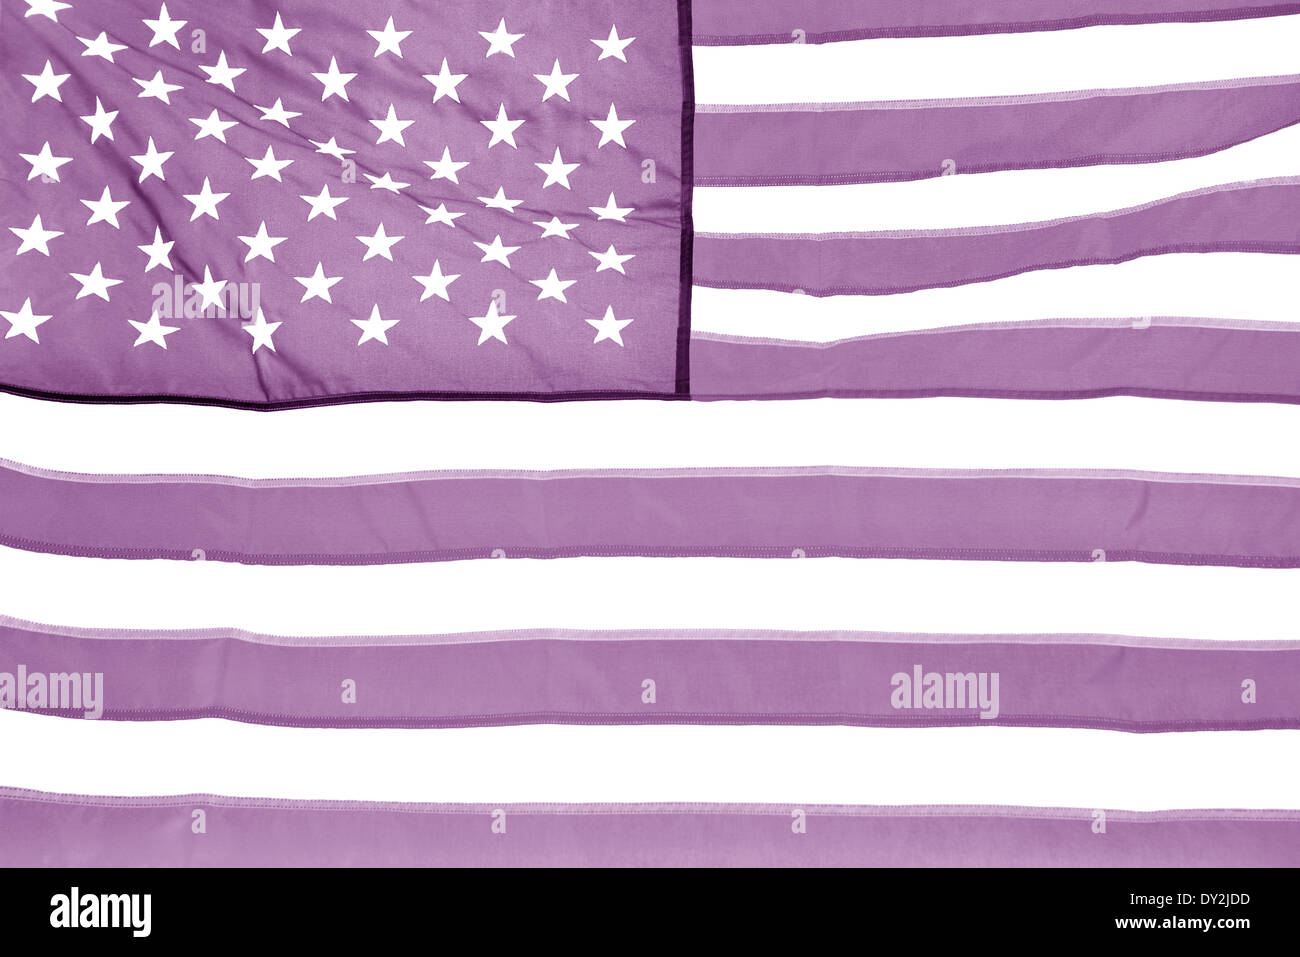 La bandiera nazionale degli Stati Uniti d'America versione lilla. Foto Stock